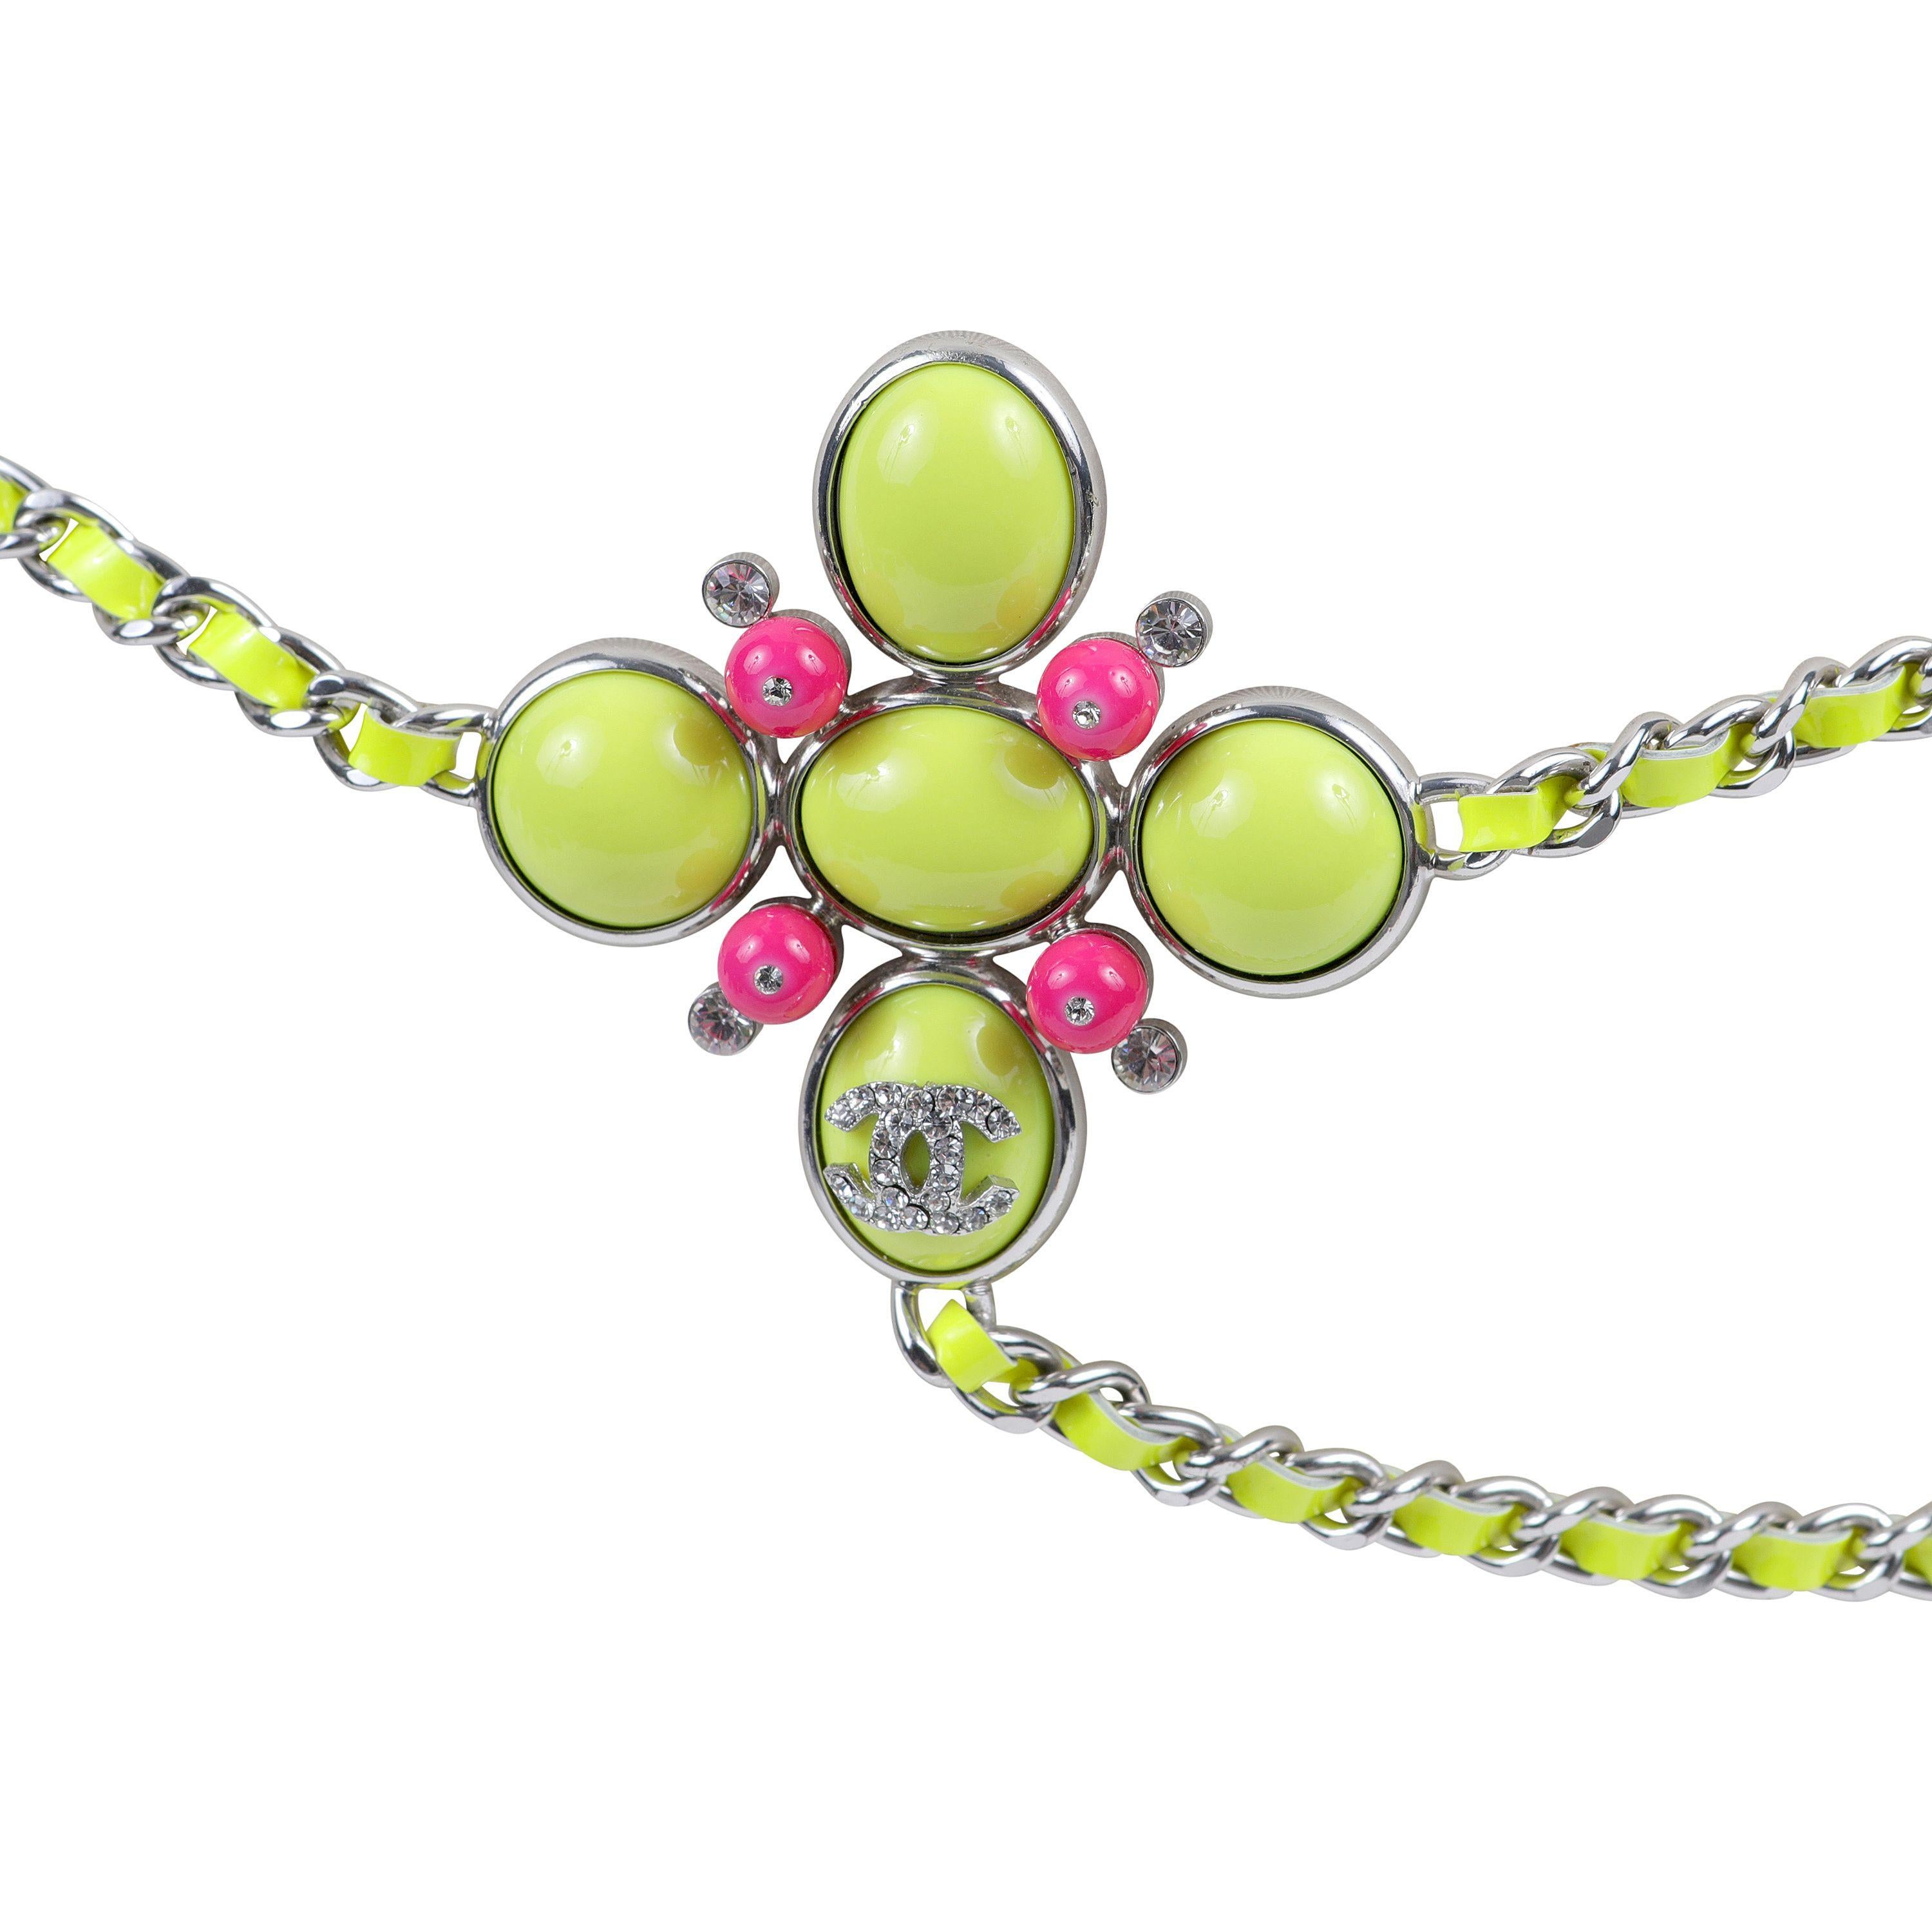 Cet authentique collier ceinture en cuir verni vert chartreuse de Chanel est impeccable.  Le cuir verni vert chartreuse presque fluo est entouré d'une chaîne argentée.  Ancrée par une broche 